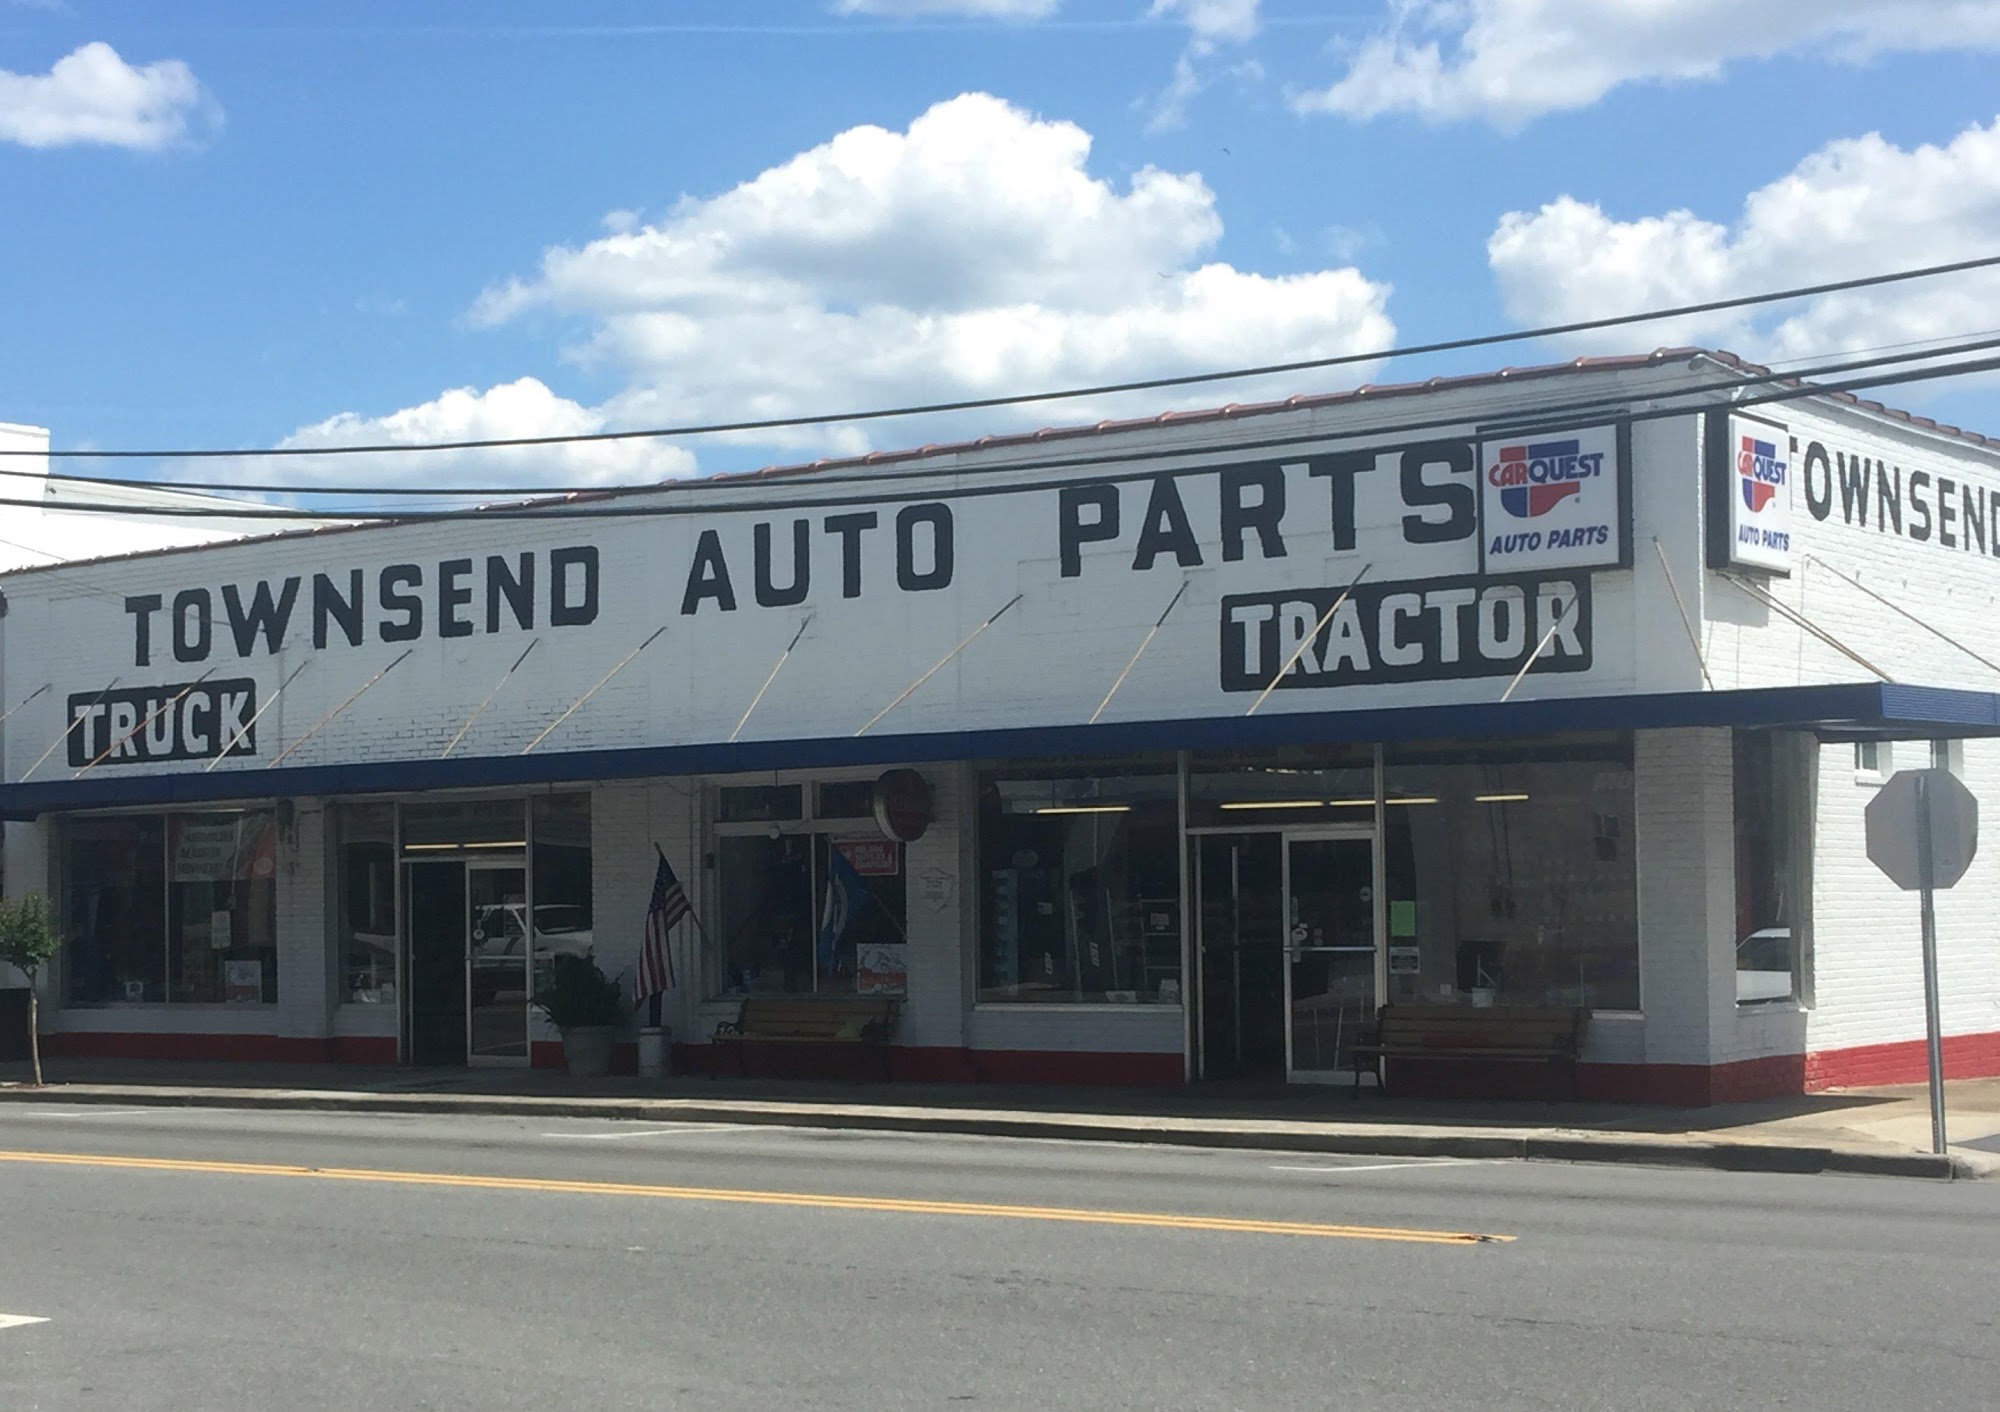 Carquest Auto Parts - Townsend Auto Parts